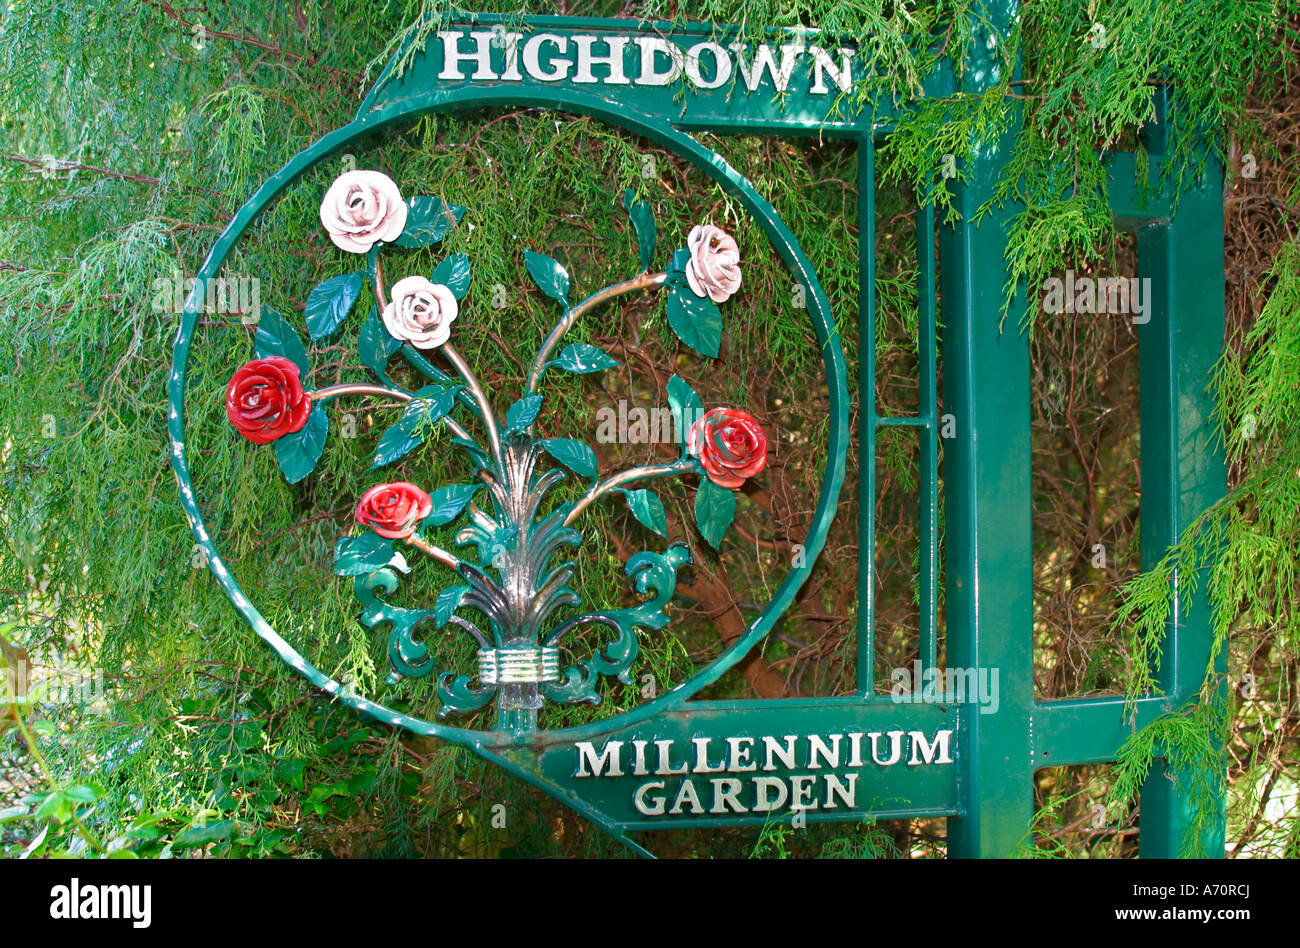 Millennium Ziergarten Schild an Highdown Gärten, Worthing, Sussex Stockfoto